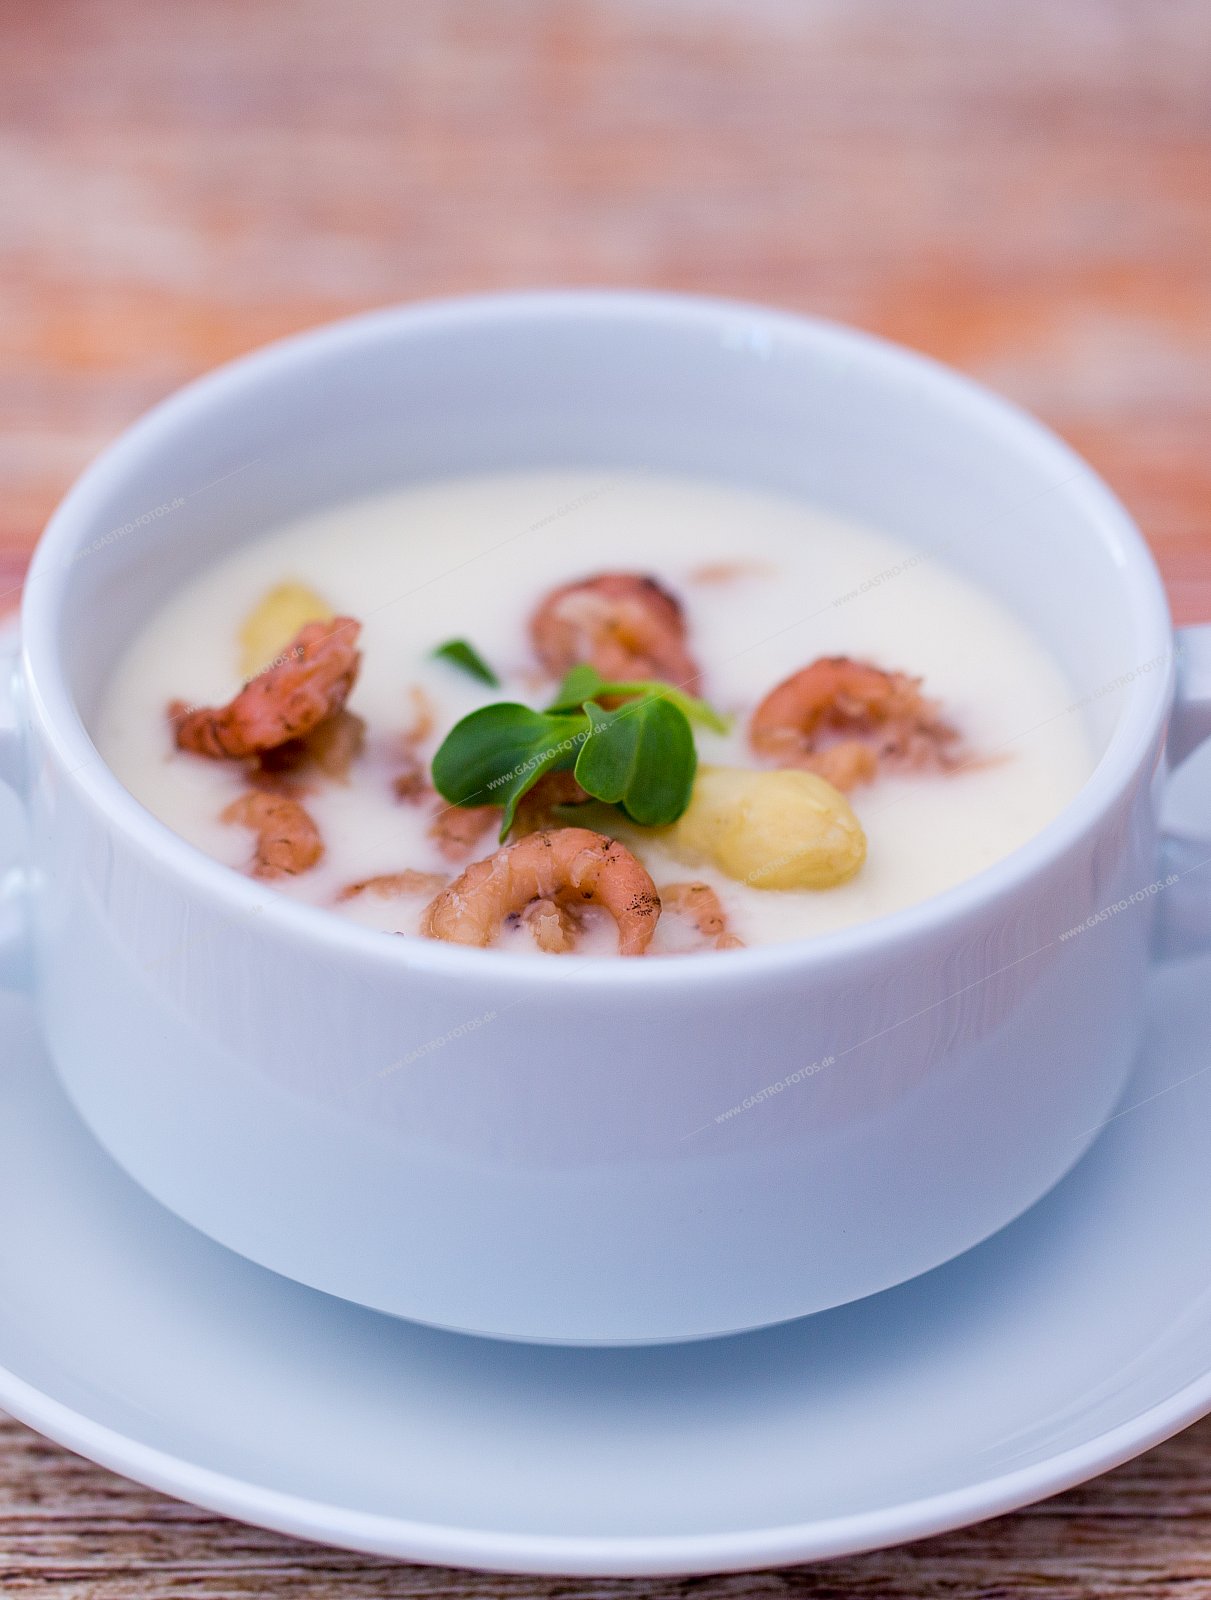 Spargelcremesuppe mit Nordeekrabben - Suppen & Eintöpfe mit Meeresfrüchten